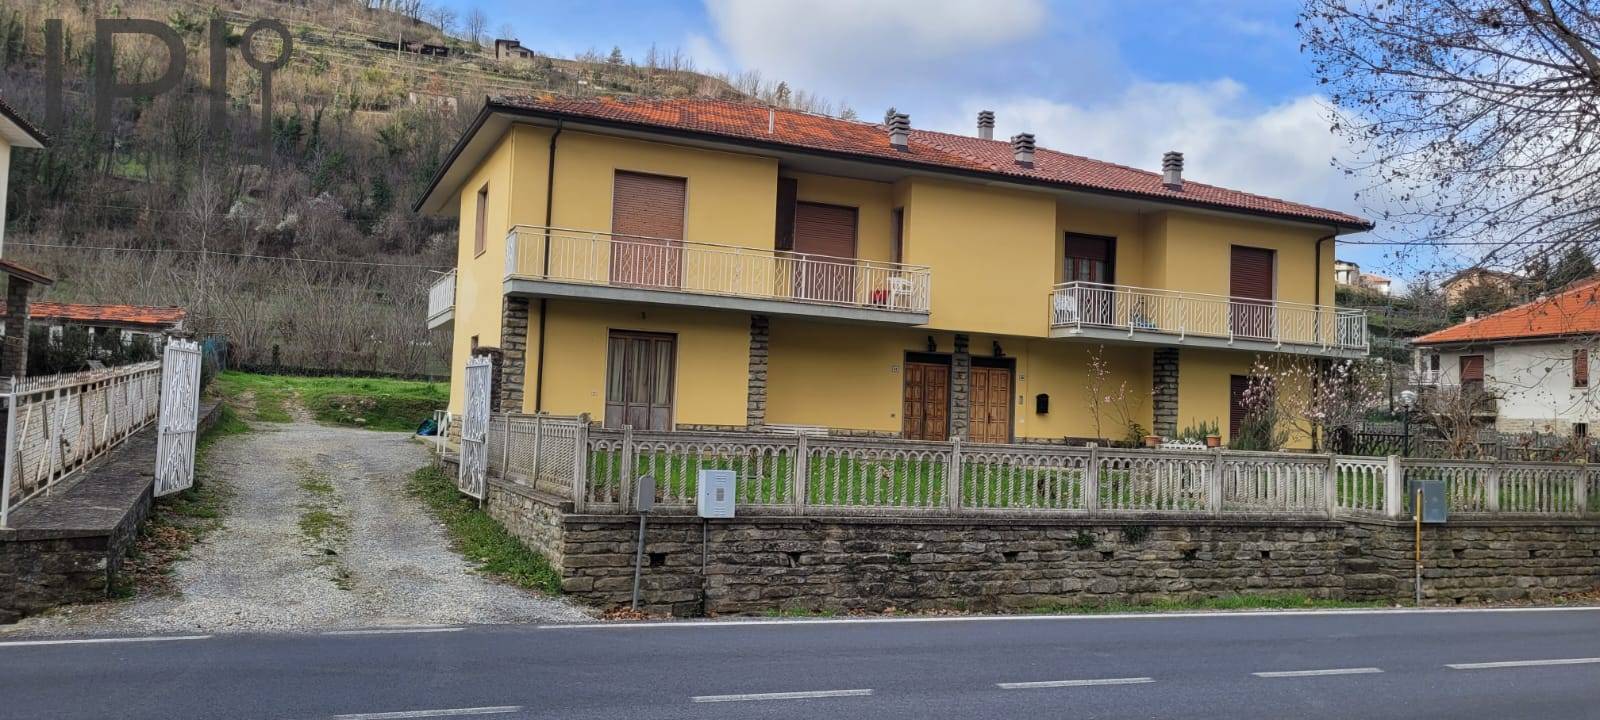 Villa a Schiera in vendita a Cortemilia, 6 locali, prezzo € 120.000 | PortaleAgenzieImmobiliari.it